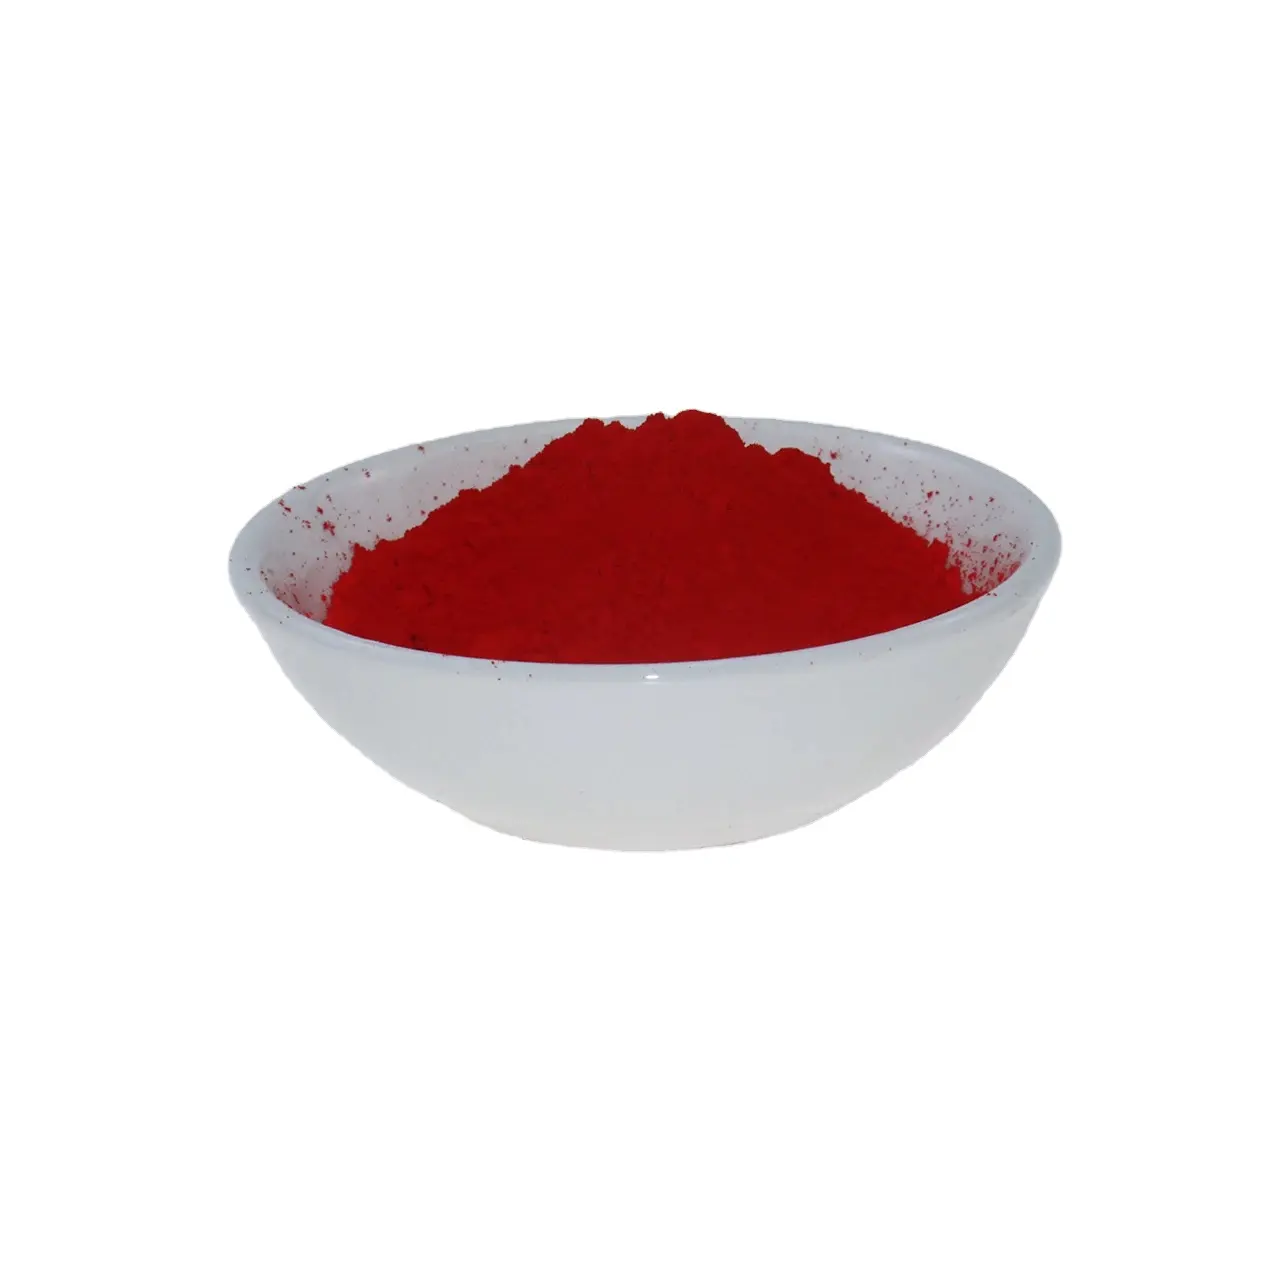 الأكثر مبيعاً صبغة عضوية حمراء-مسحوق أكسيد الحديد الاصطناعي لطلاء الحبر والمطاط البلاستيكي